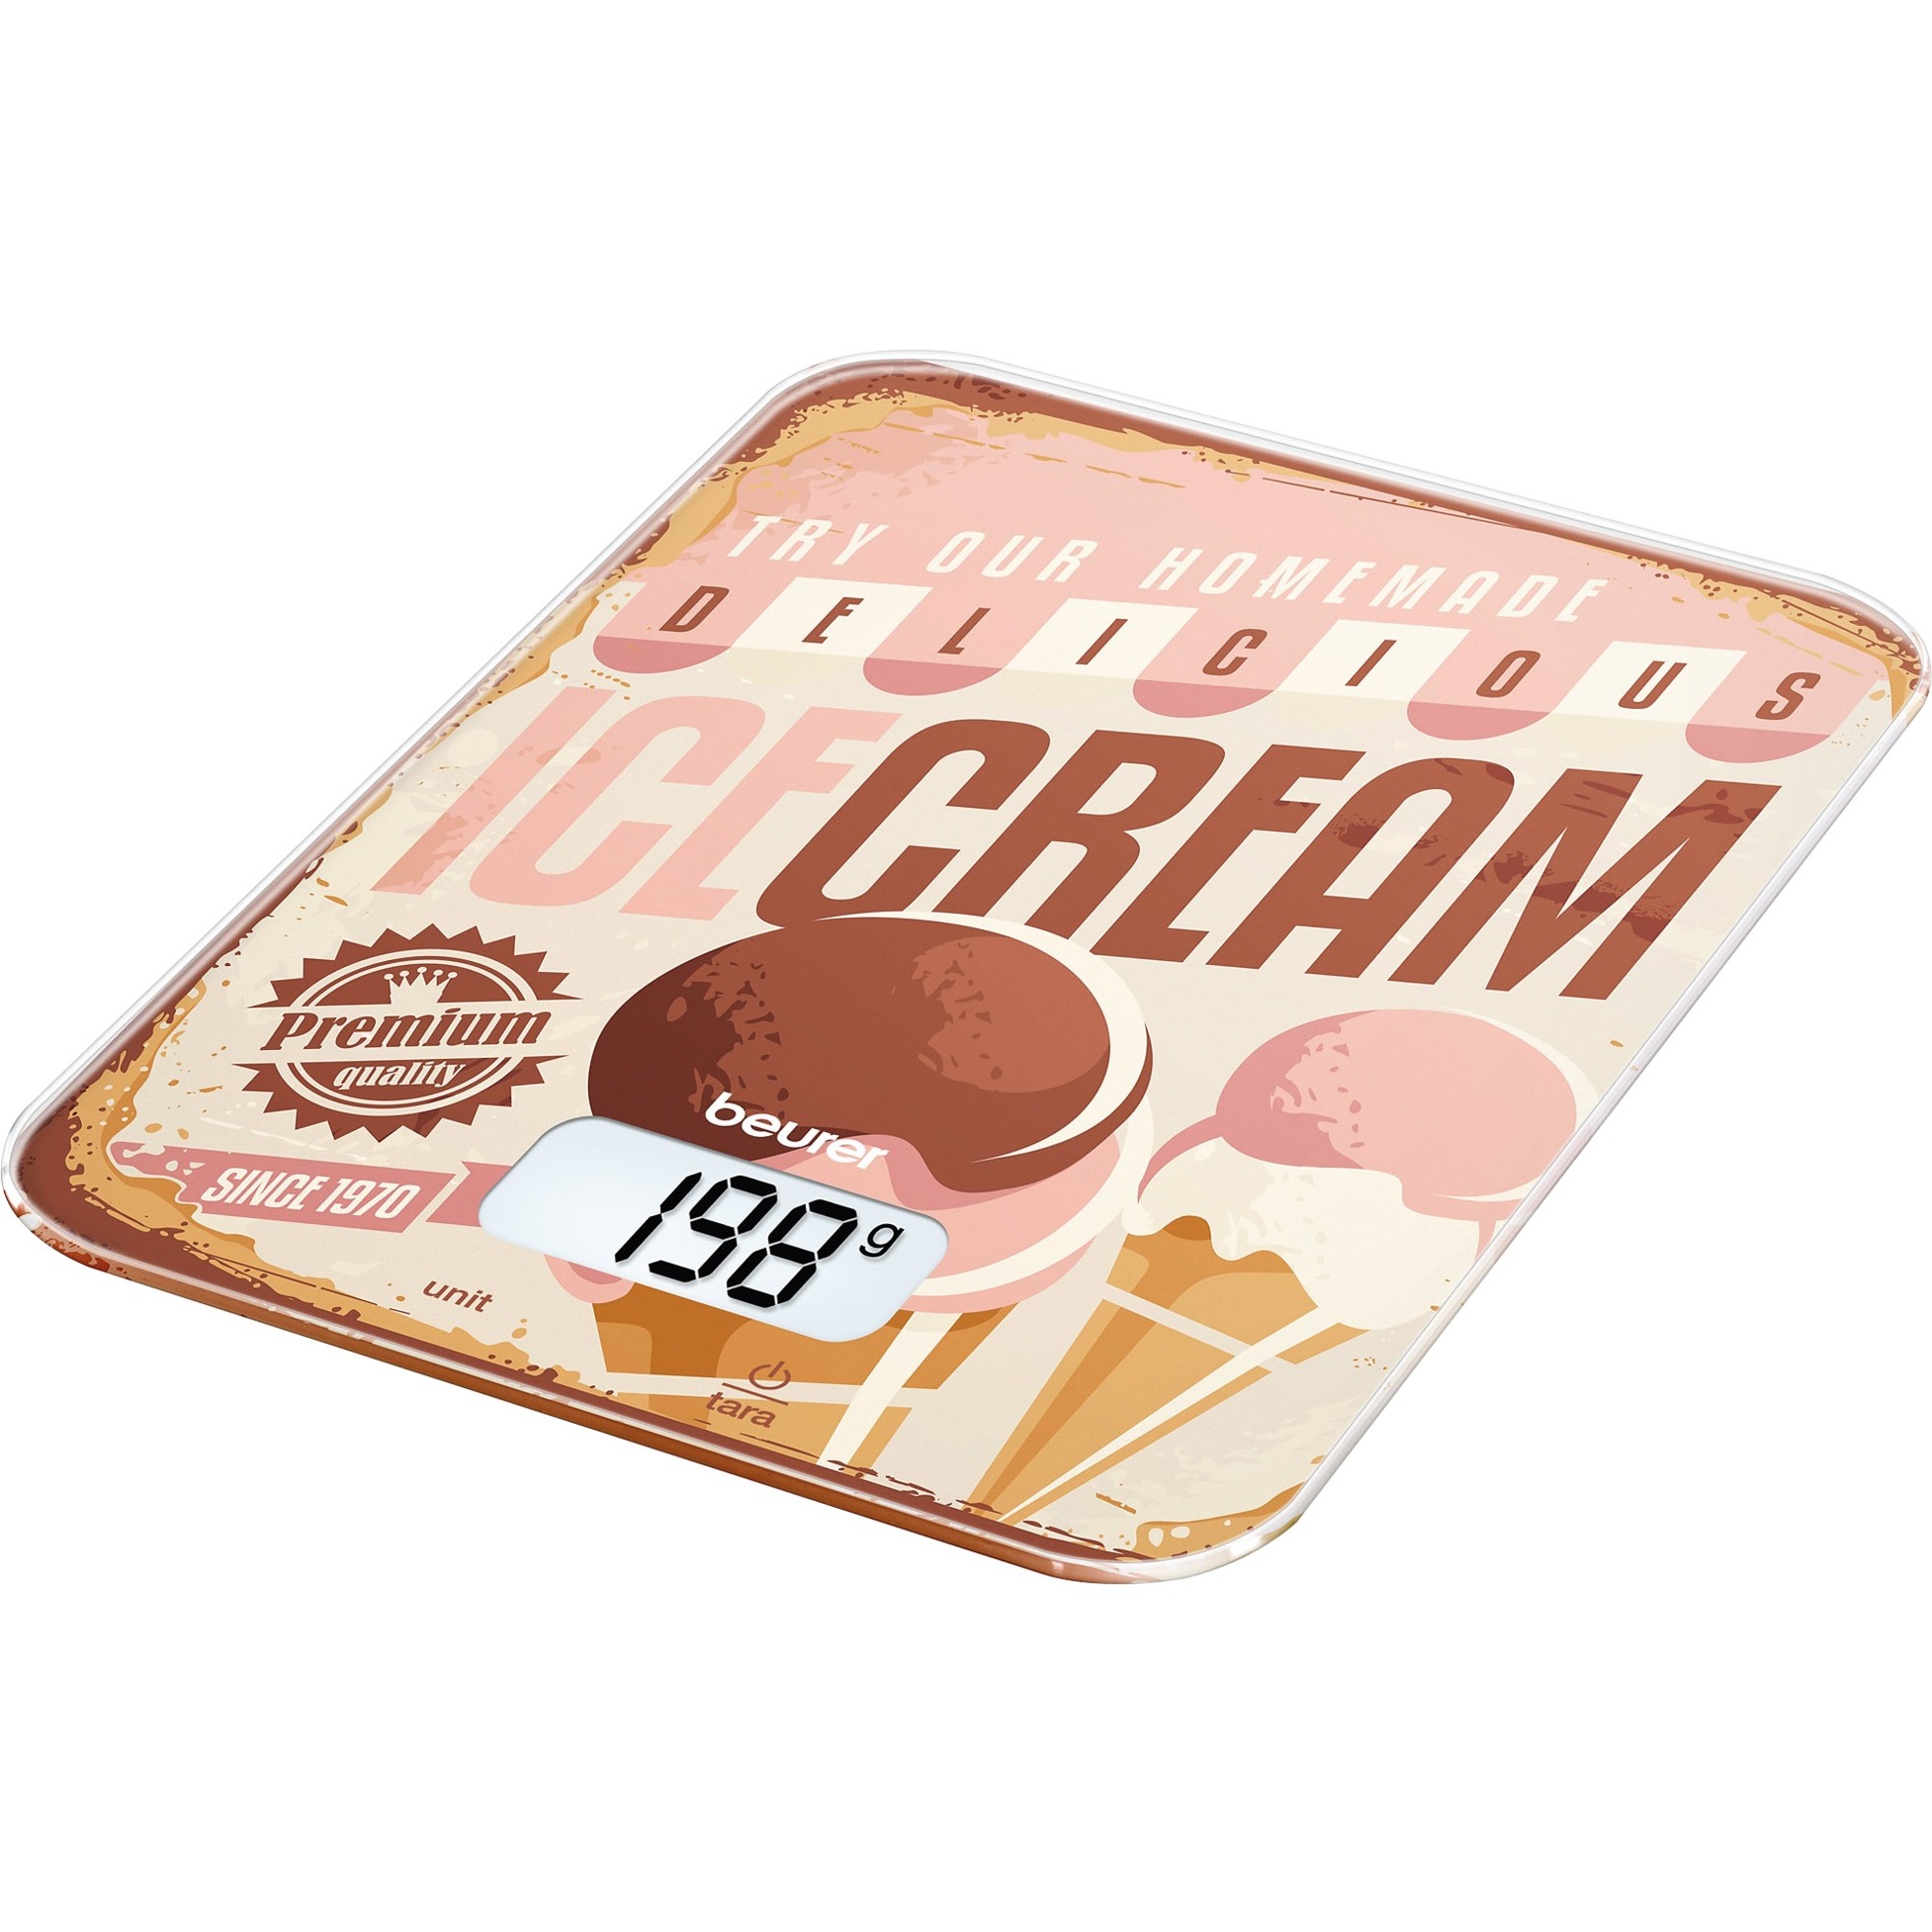 Image of Alternate - Küchenwaage KS 19 Ice-cream online einkaufen bei Alternate